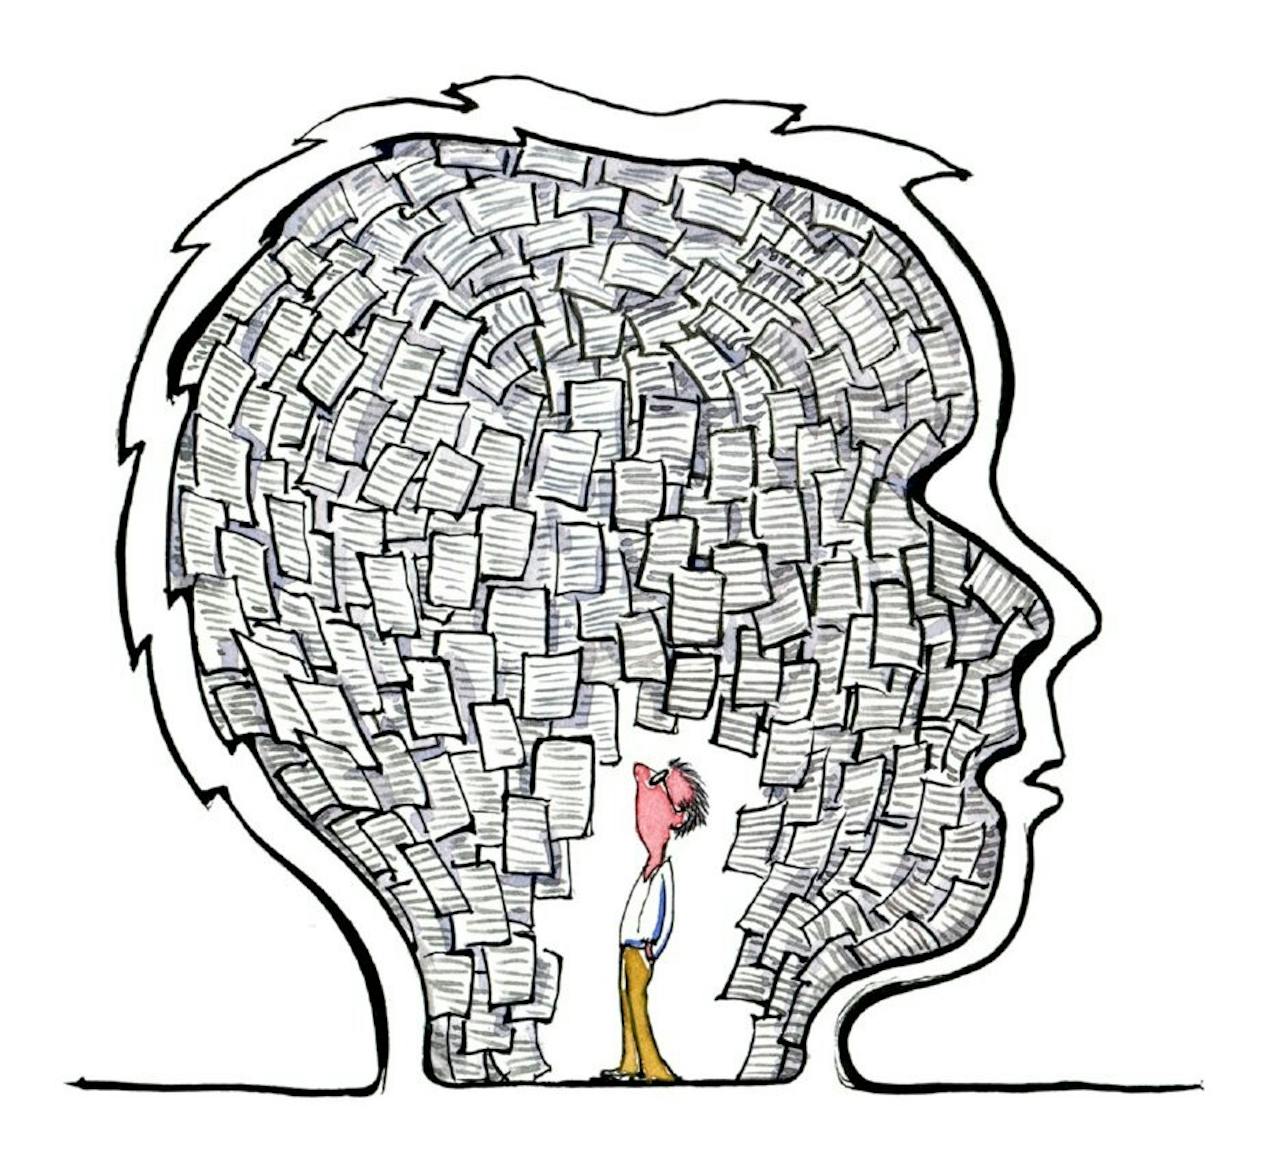 Een illustratie van een hoofd met veel papier erin. Er staat ook een poppetje in het hoofd, tussen het papier.